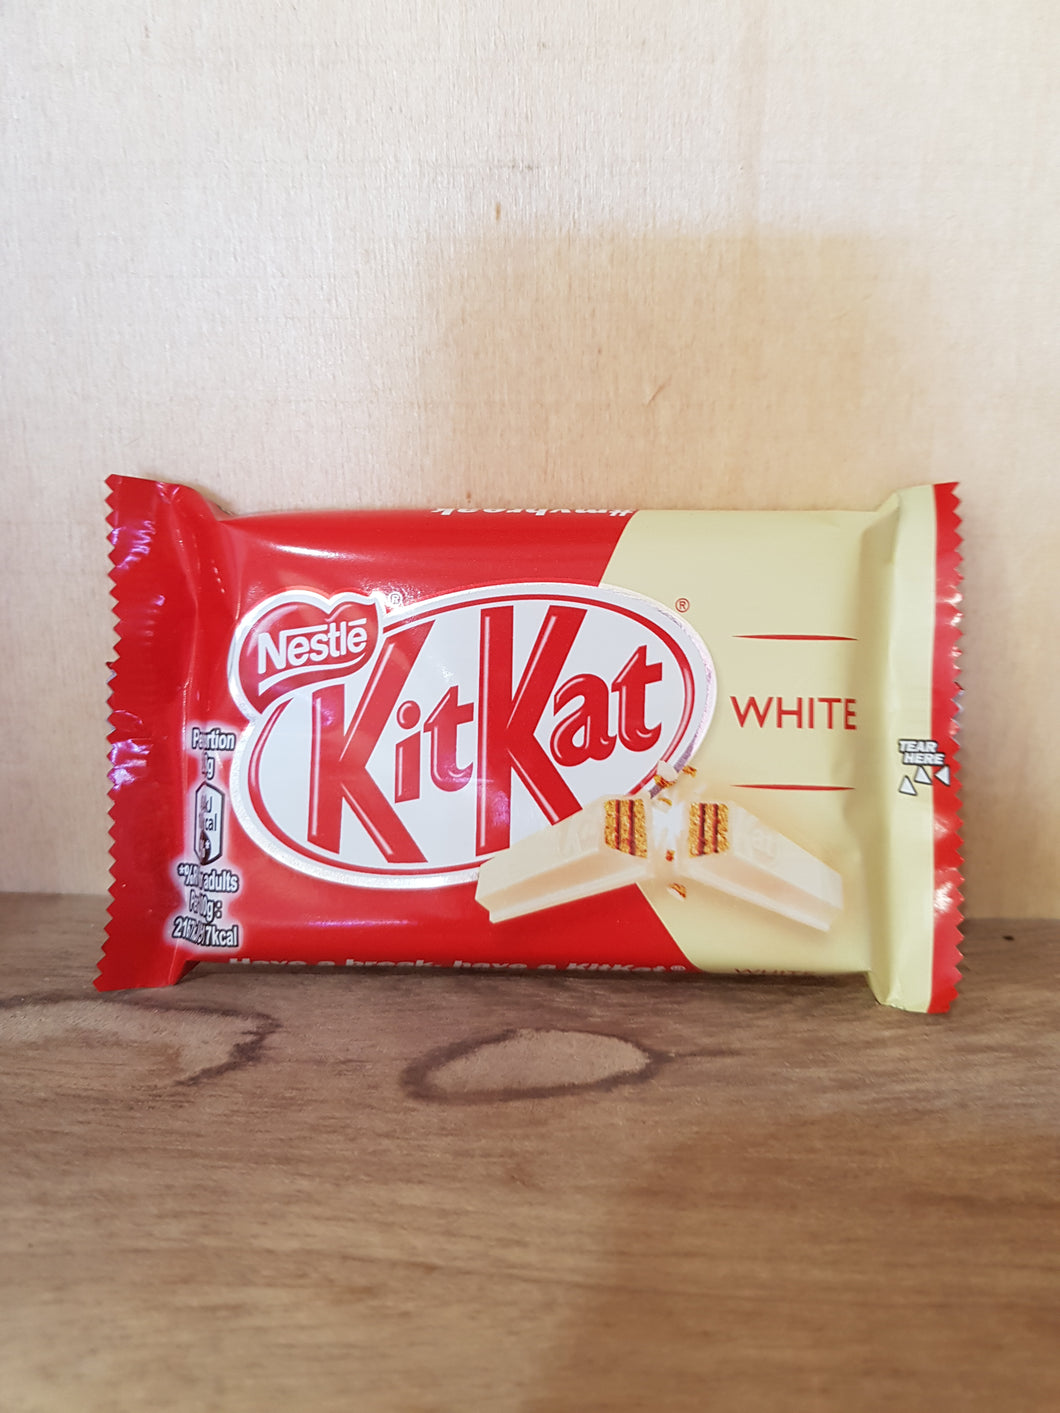 KitKat 4 Finger White 41.5g